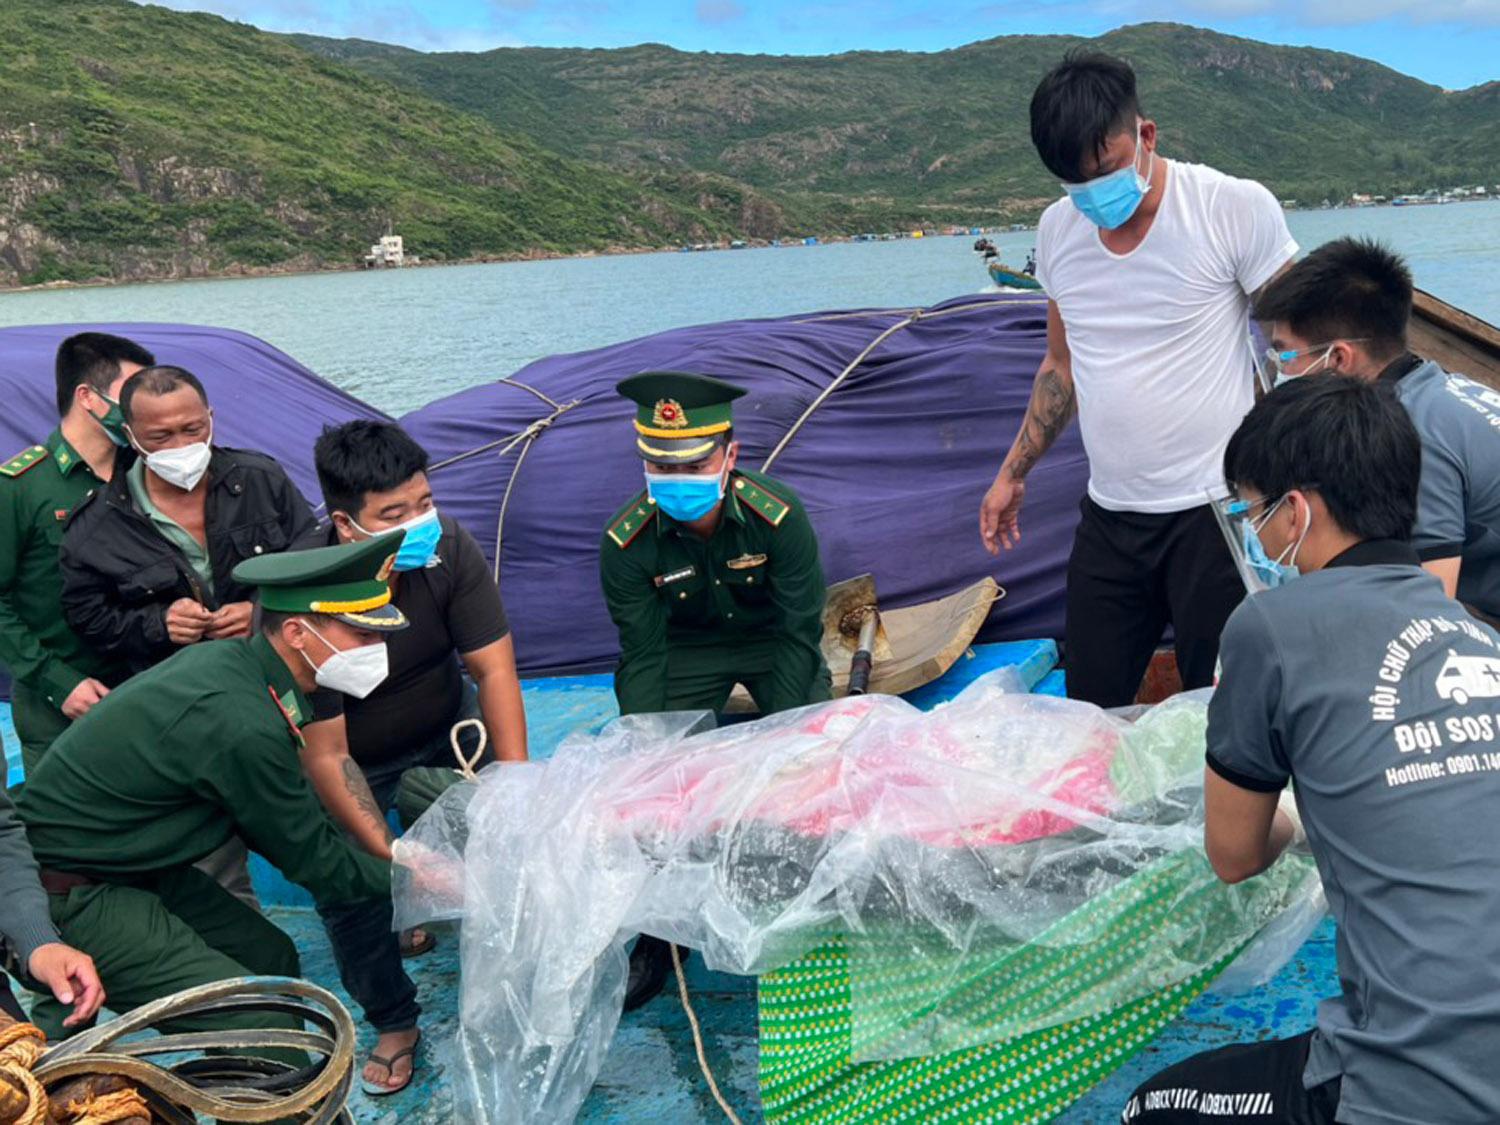 Bình Định: Một ngư dân tử vong sau 5 ngày xung đột với 2 ngư dân khác - ảnh 1